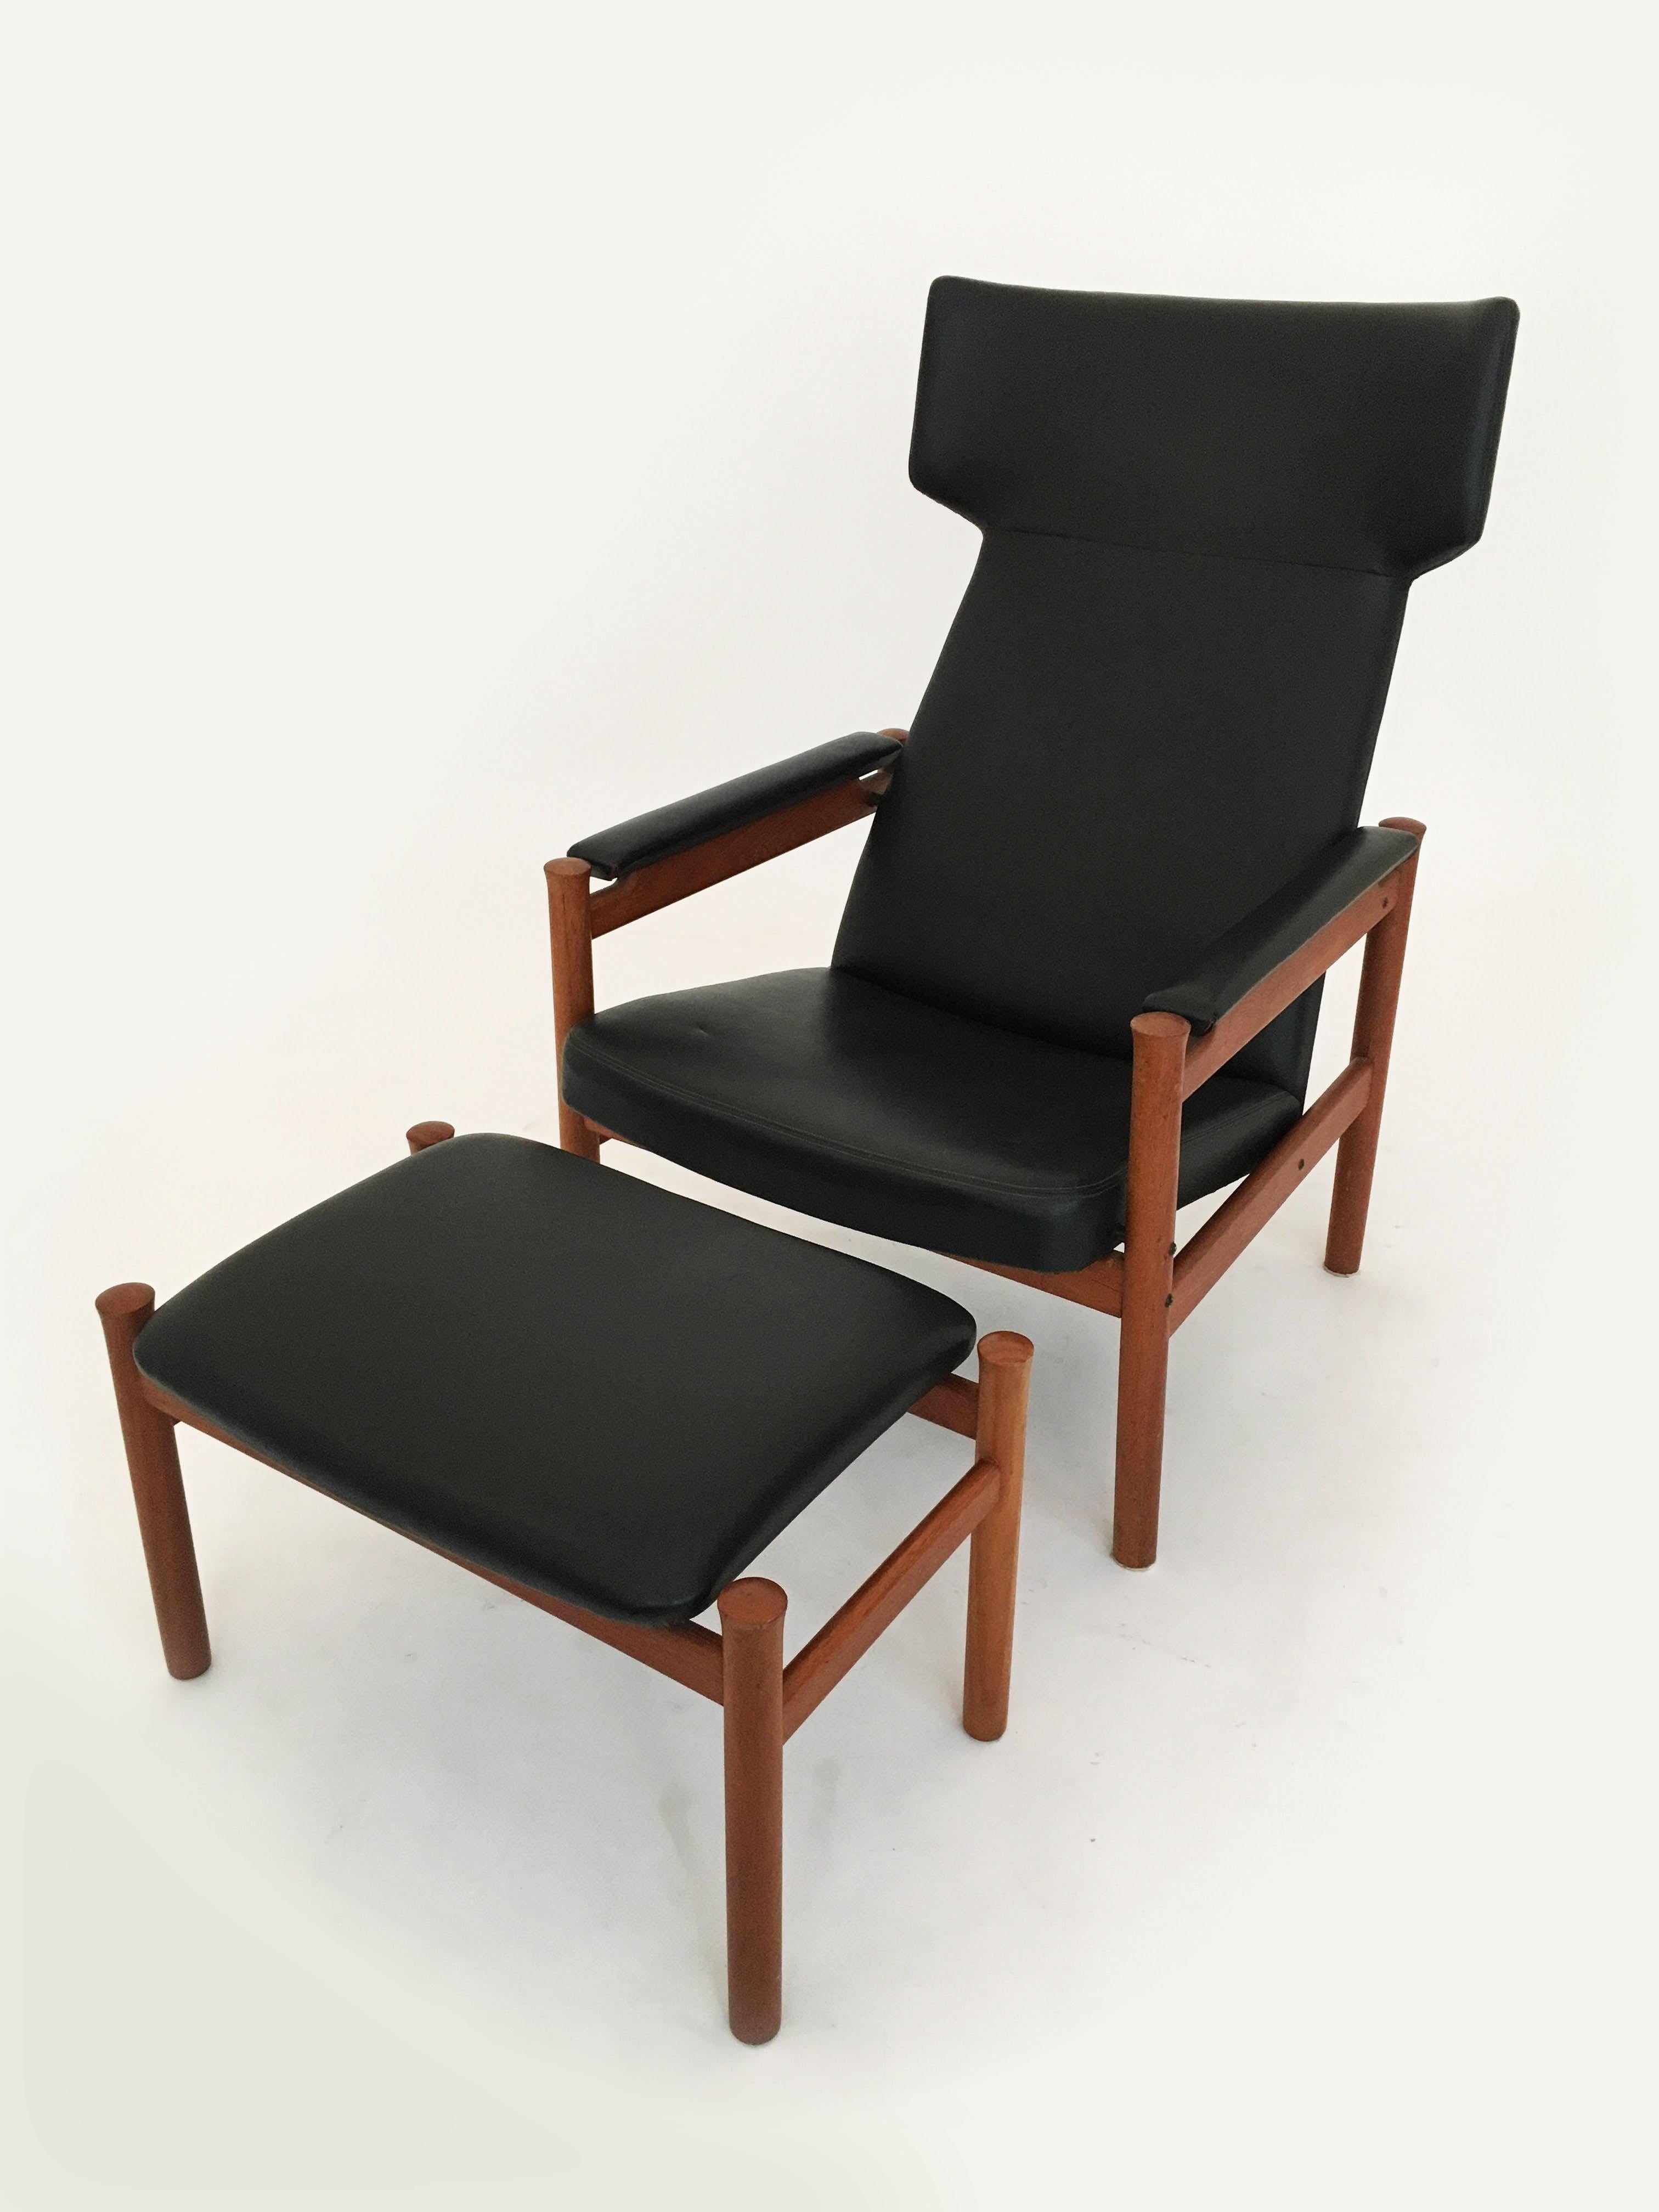 Danish Scandinavian Modern Wing Chair and Ottoman by Soren Hansen for Fritz Hansen 1963 For Sale